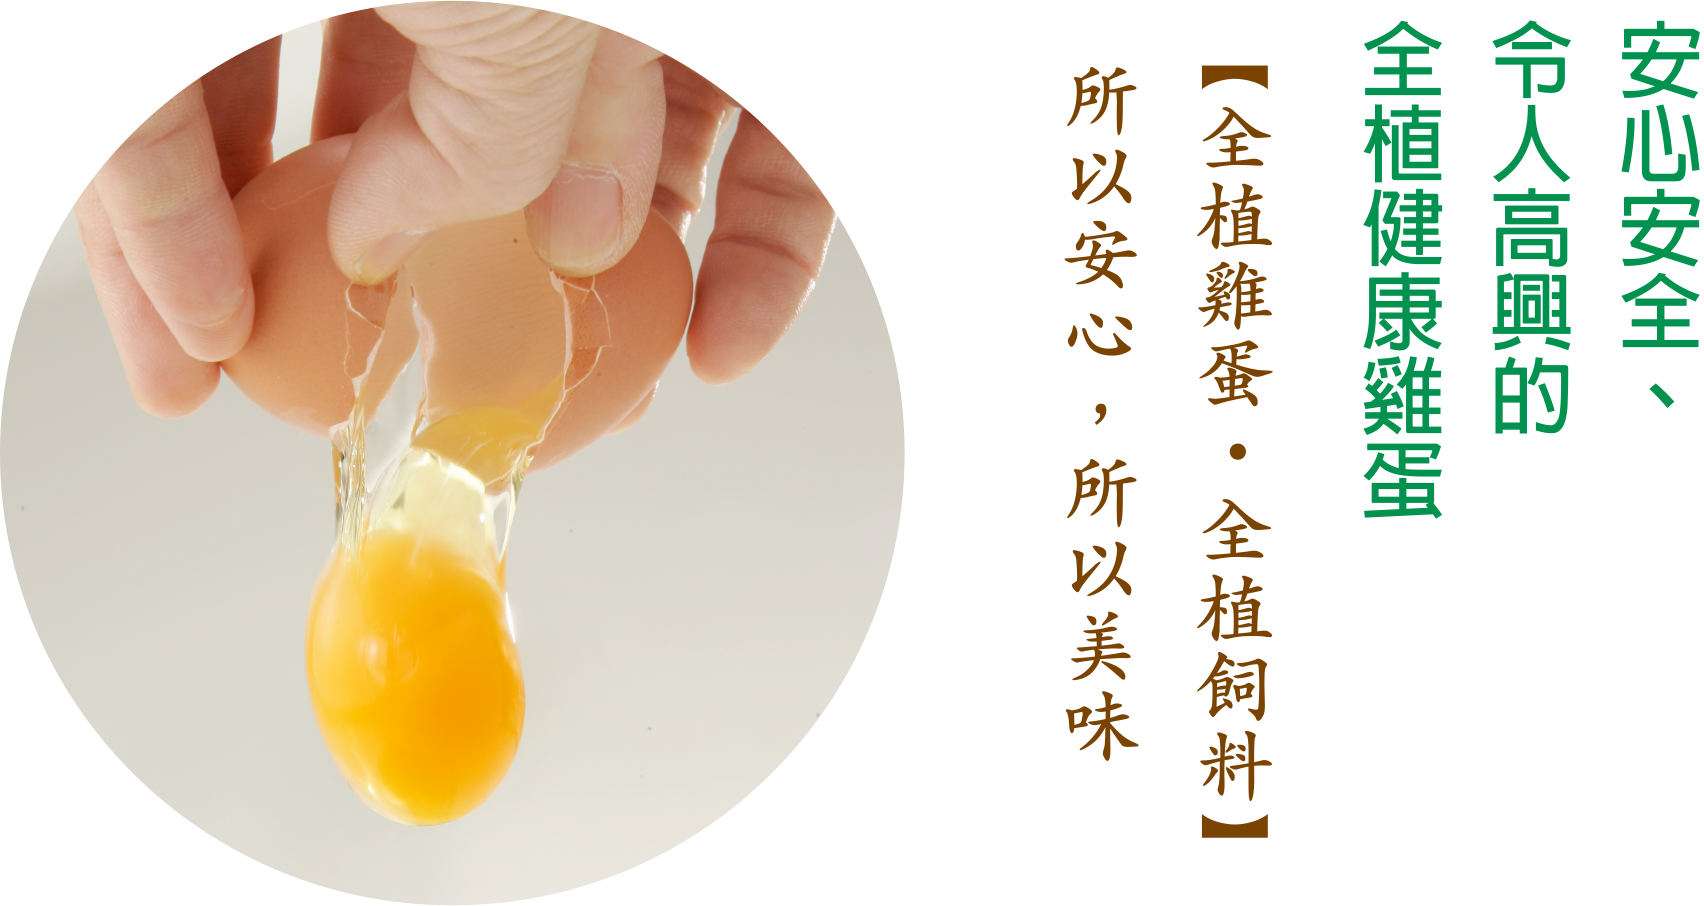 安心安全、令人高興的全植健康雞蛋【全植雞蛋 ・全植飼料】所以安心，所以美味